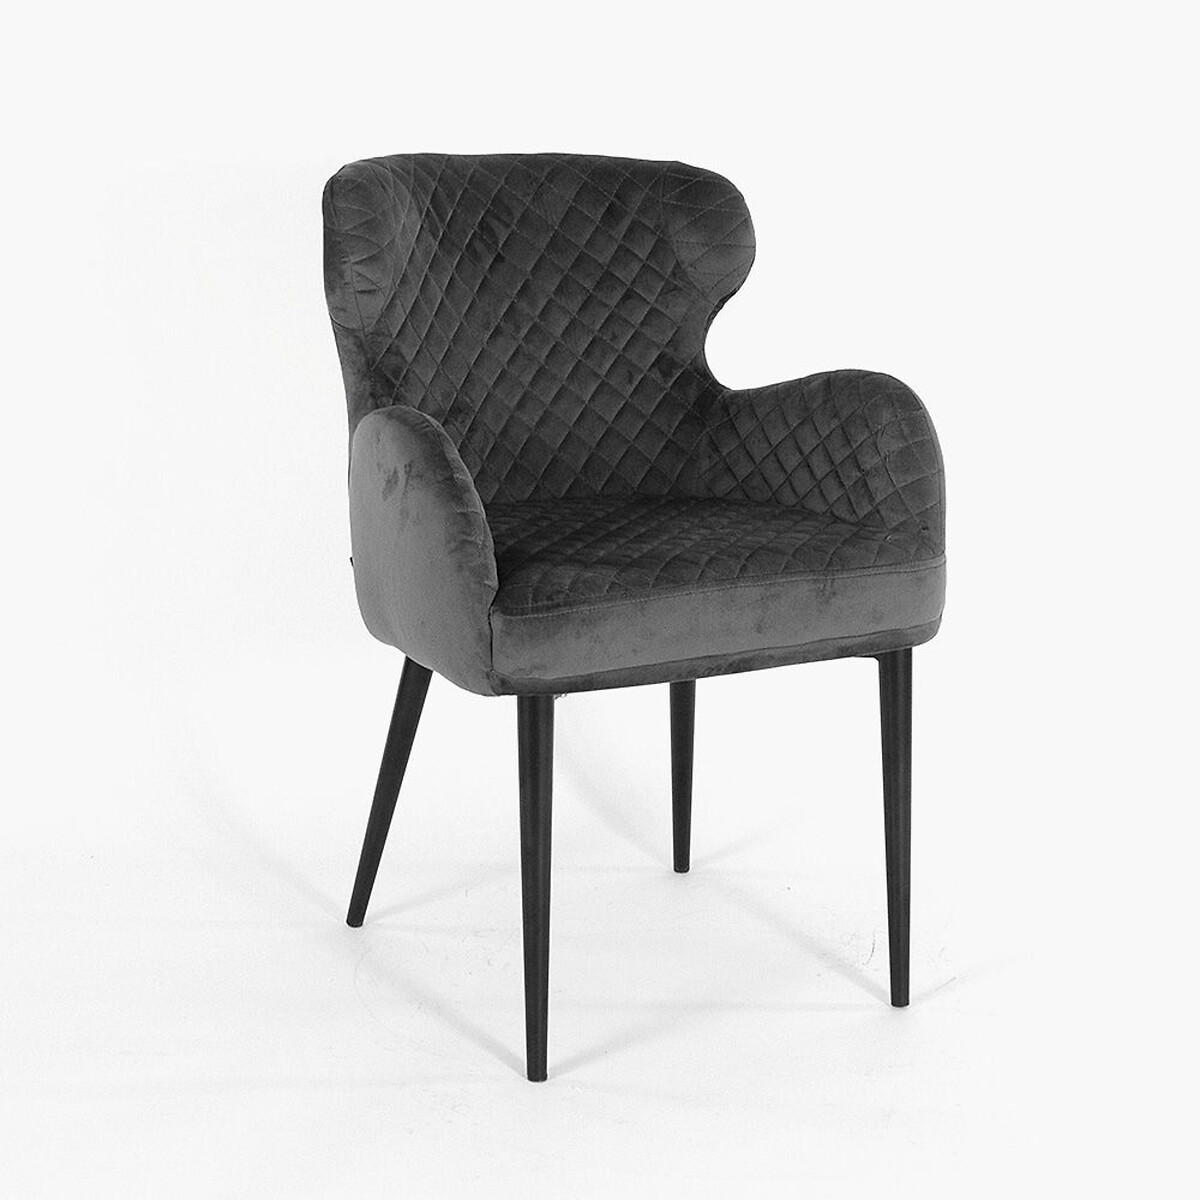 Стул Морган единый размер серый стул с фланелевым покрытием tibby единый размер серый